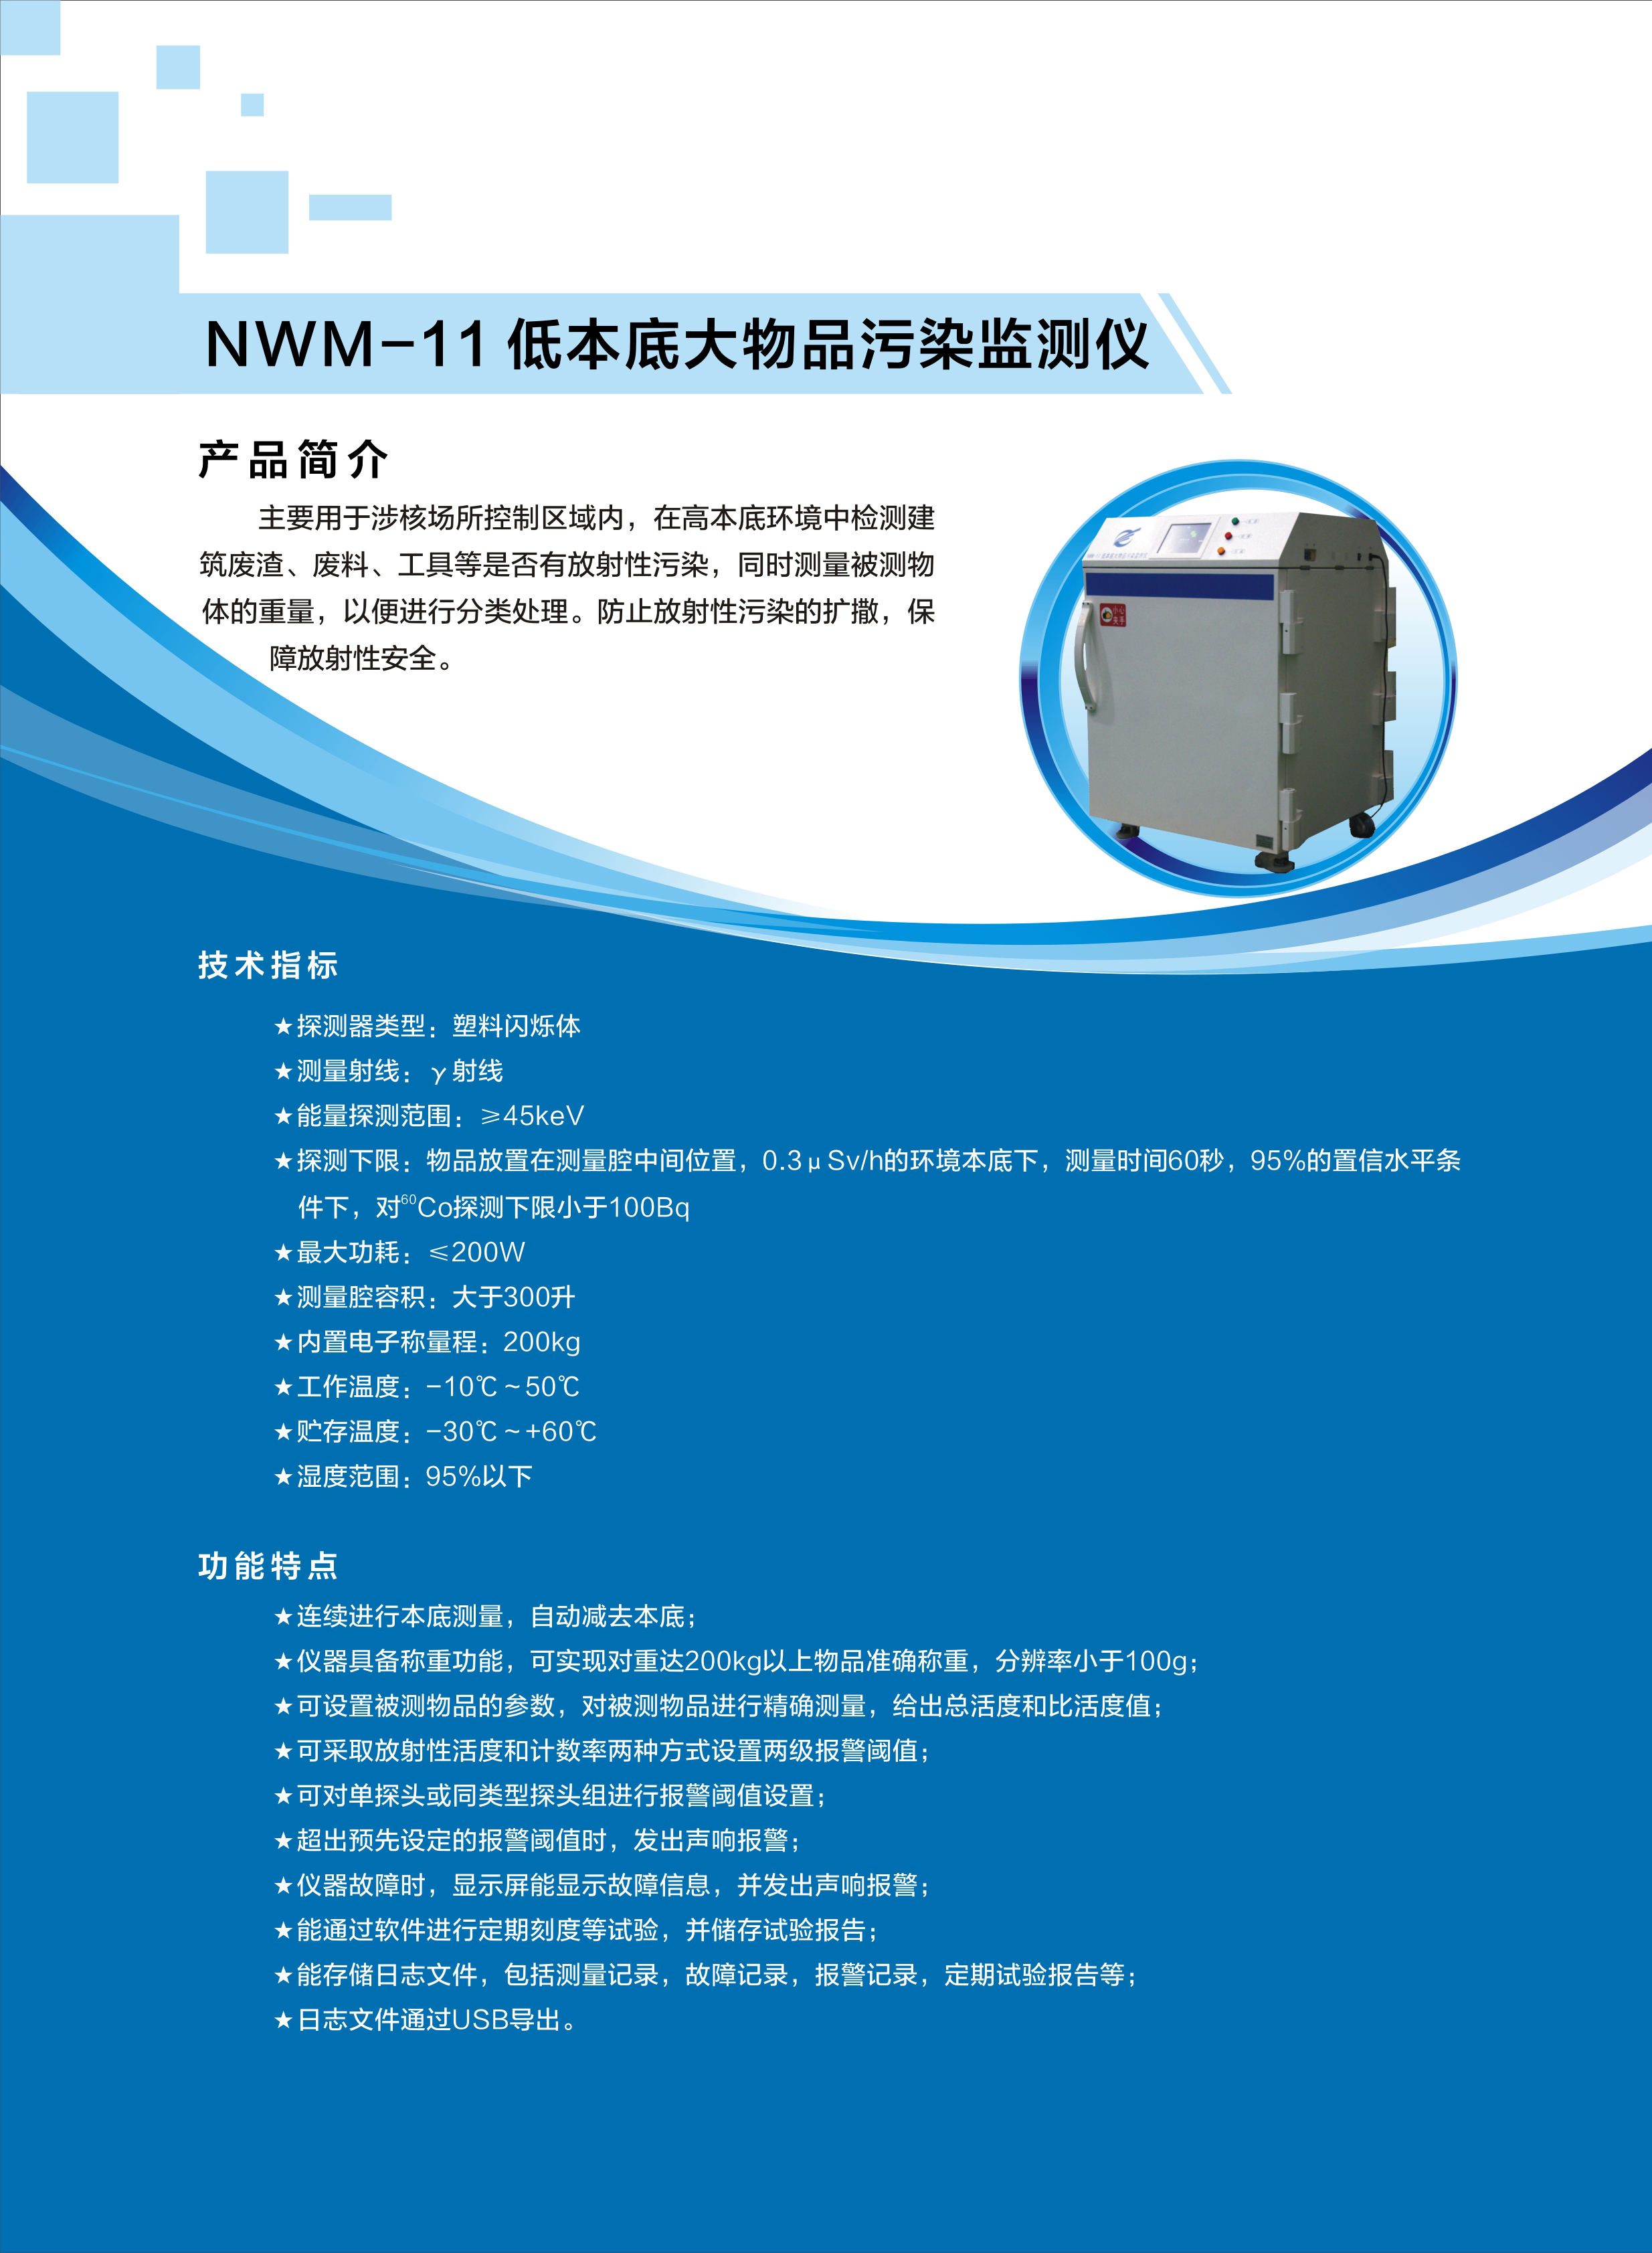 17.NWM-11低本底大物品污染监测仪.jpg